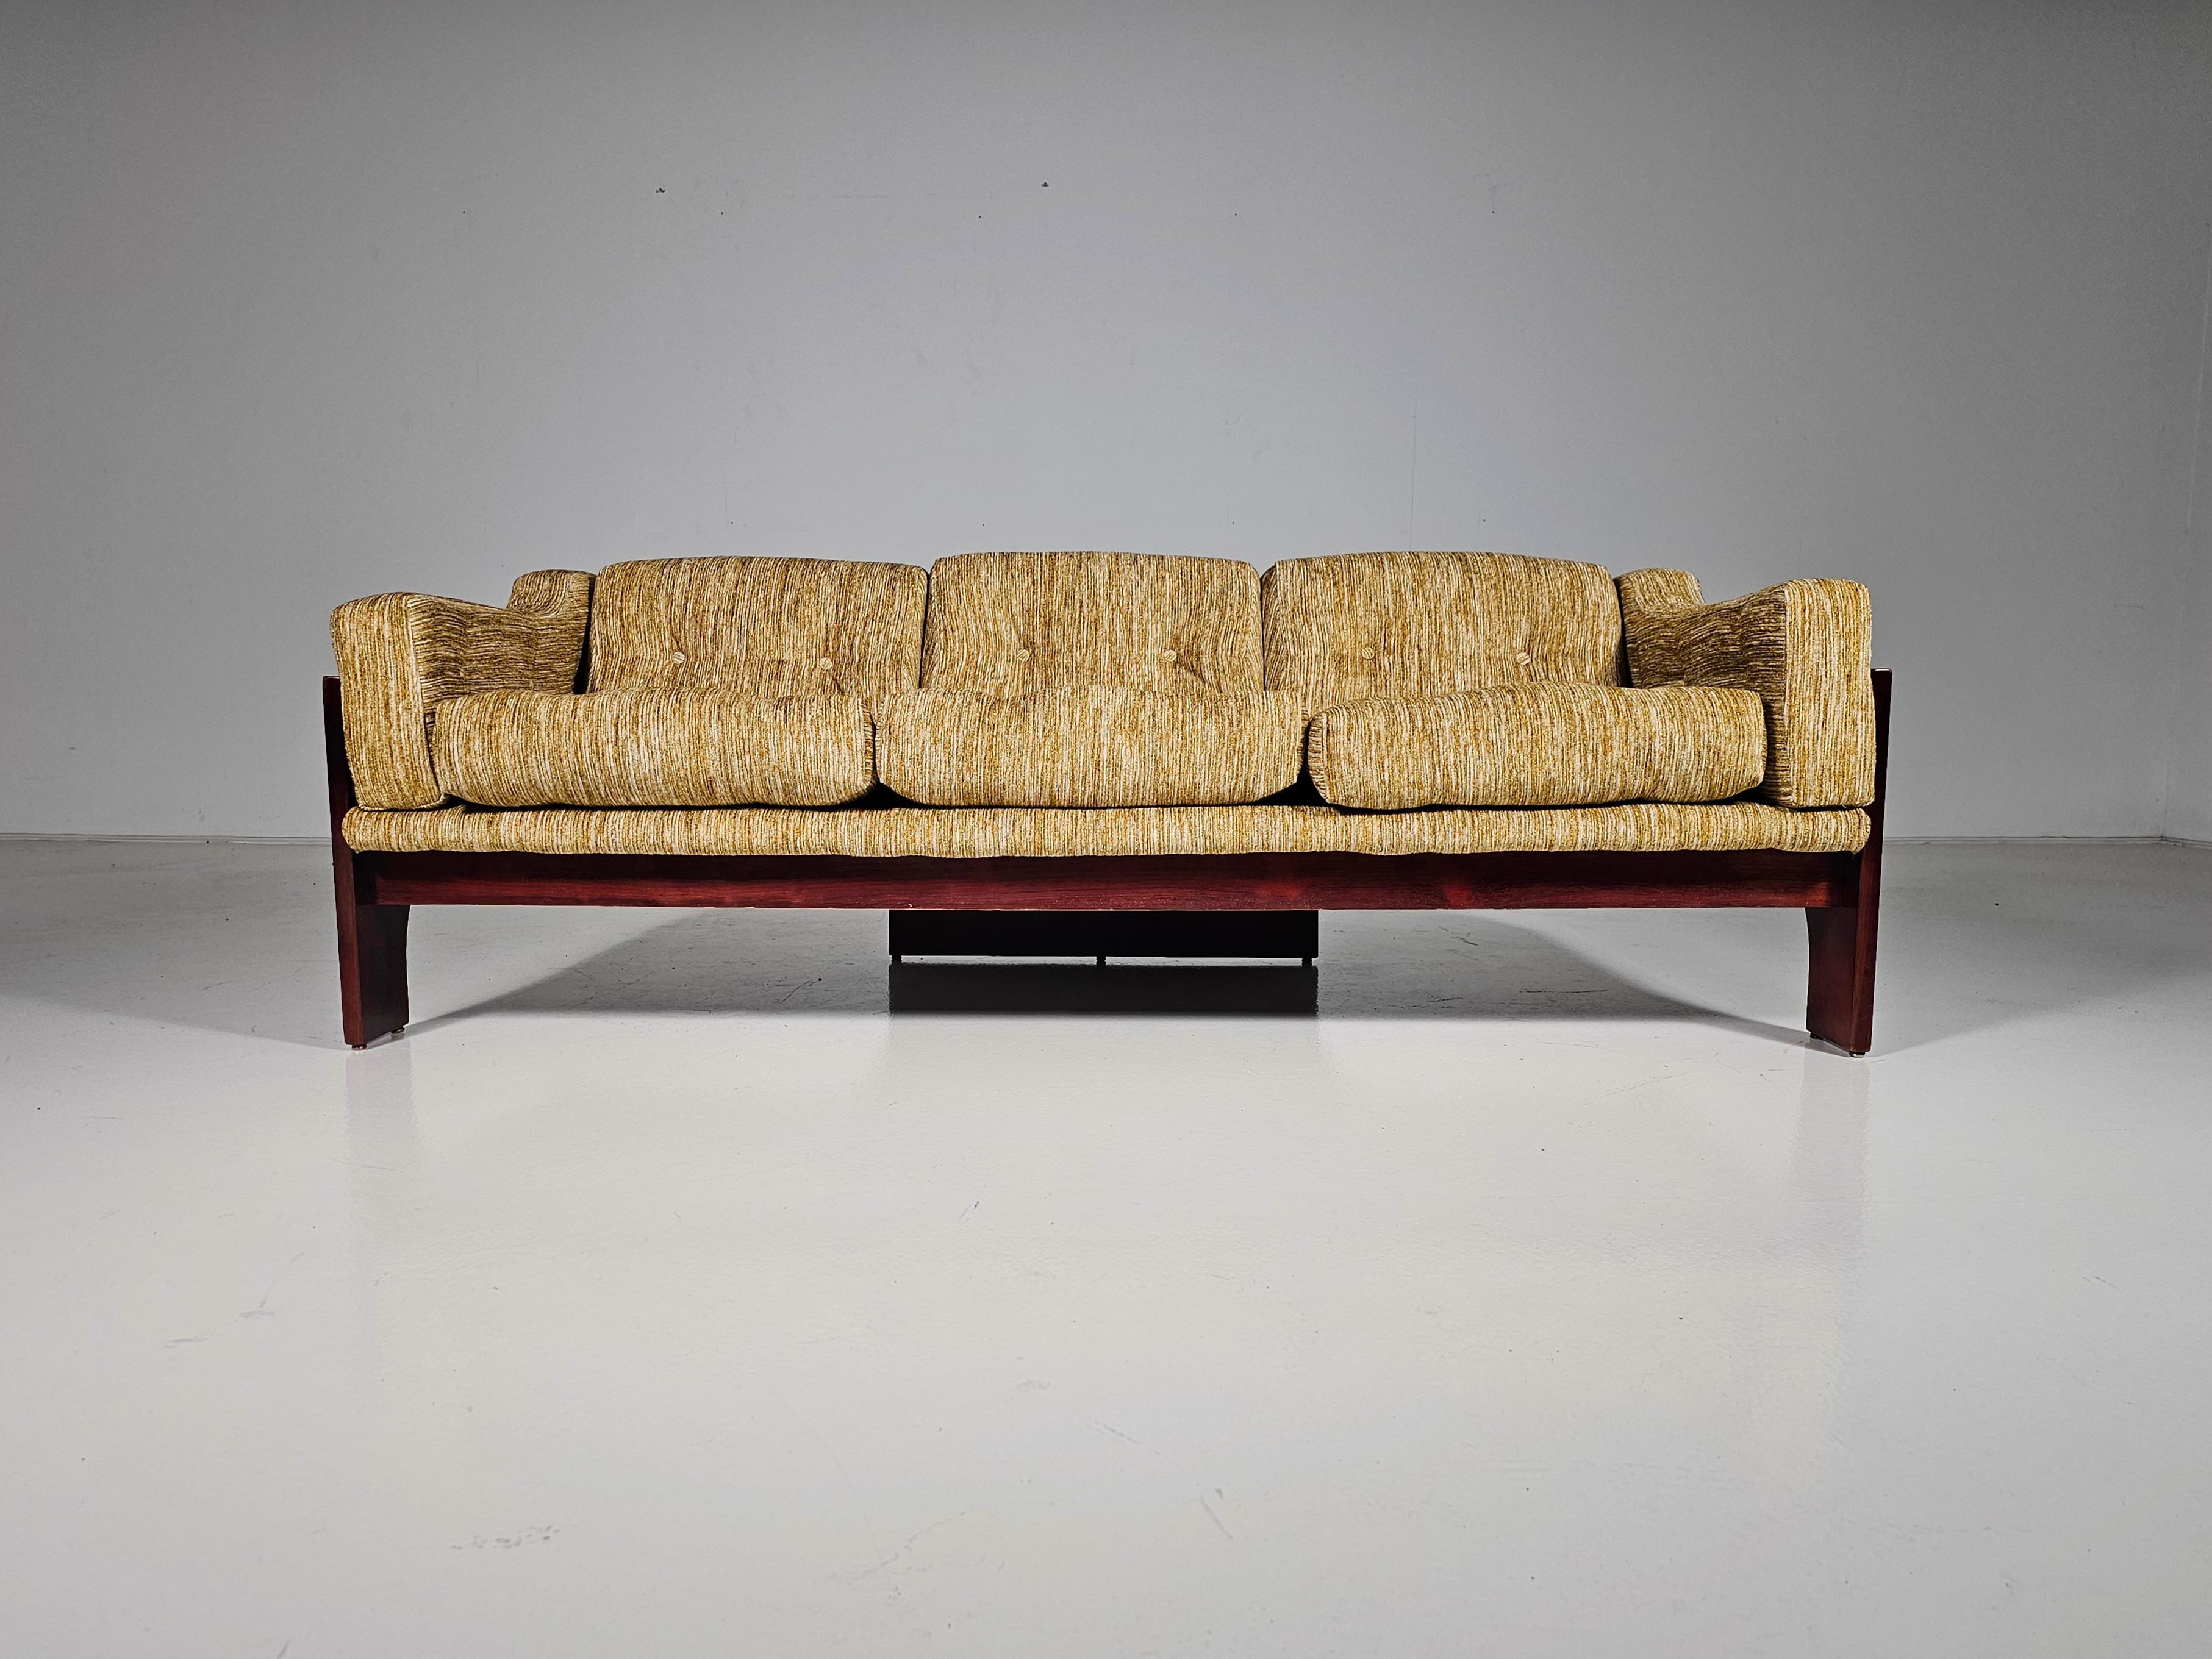 Le canapé trois places Oriolo a été conçu par Claudio Salocchi et constitue une pièce emblématique du design italien. Fabriqué dans les années 1960 par Sormani, ce canapé se distingue par ses lignes audacieuses et son confort exceptionnel, grâce à